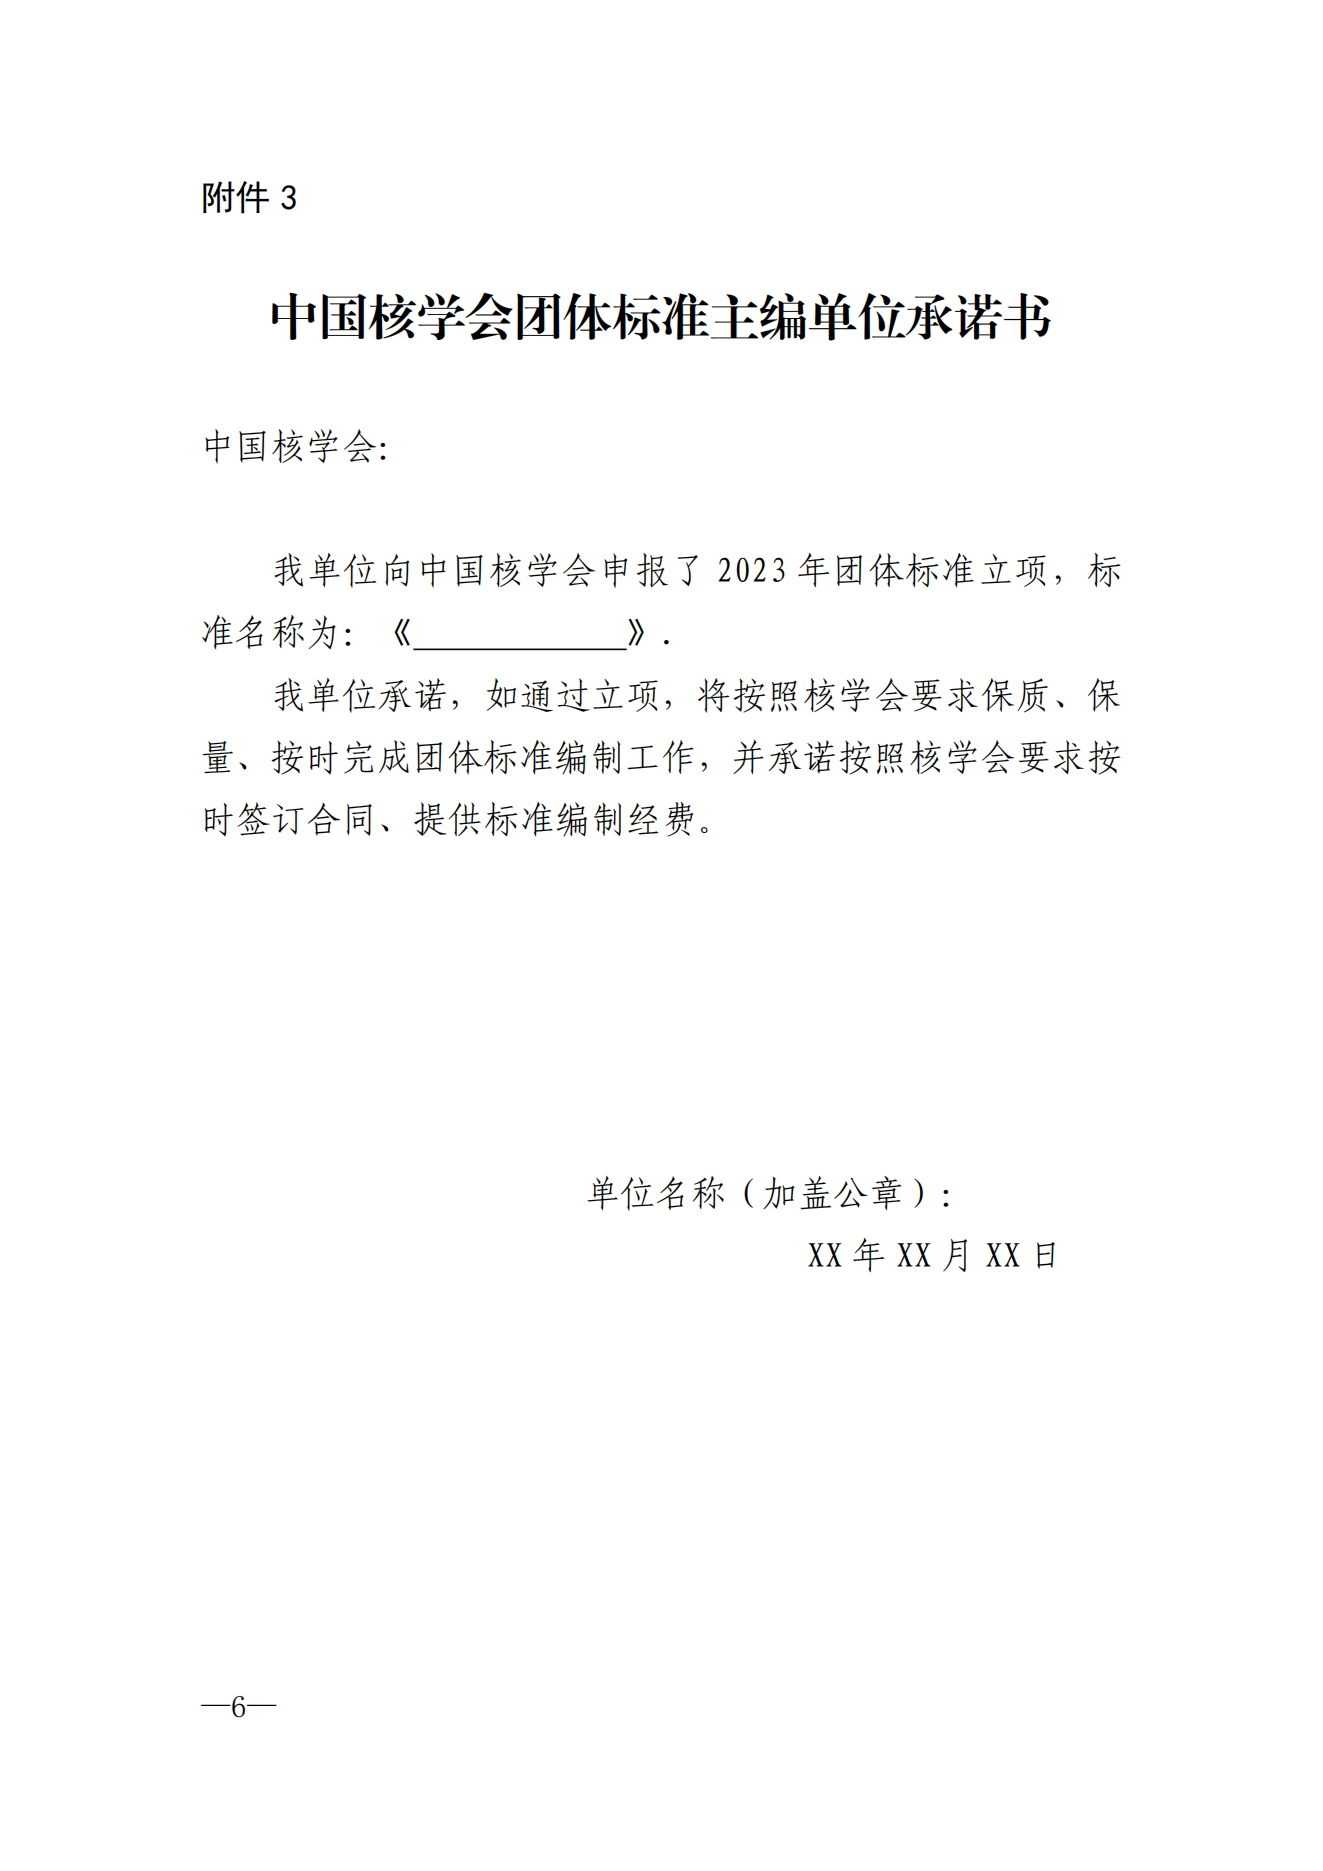 关于征集2023年第二批中国核学会团体标准立项计划的通知-8.21_05.png